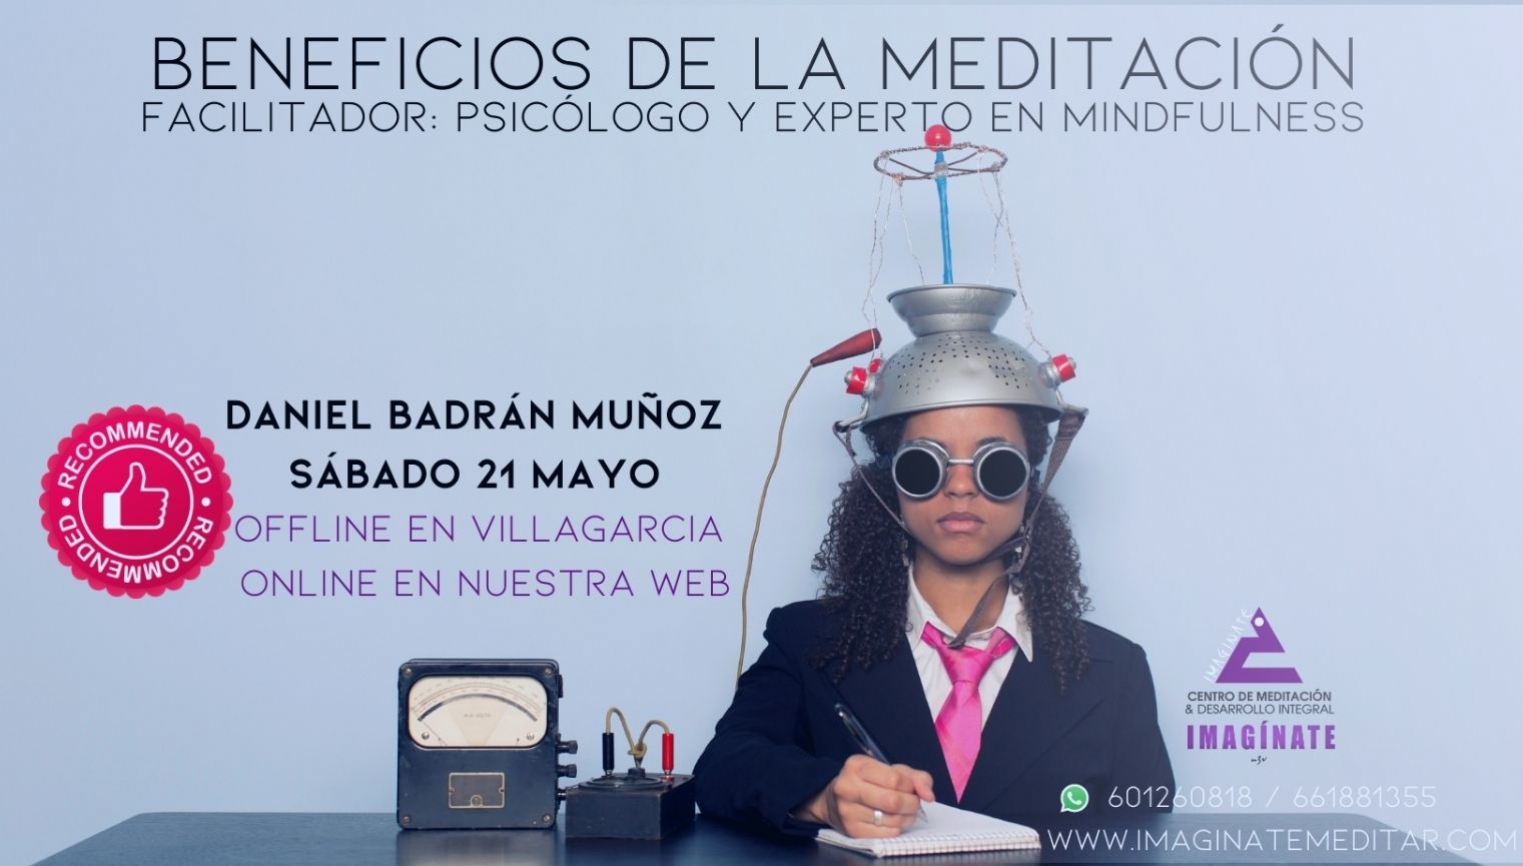 Beneficios de la Meditación por Daniel Badrán Muñoz - foto 1/1